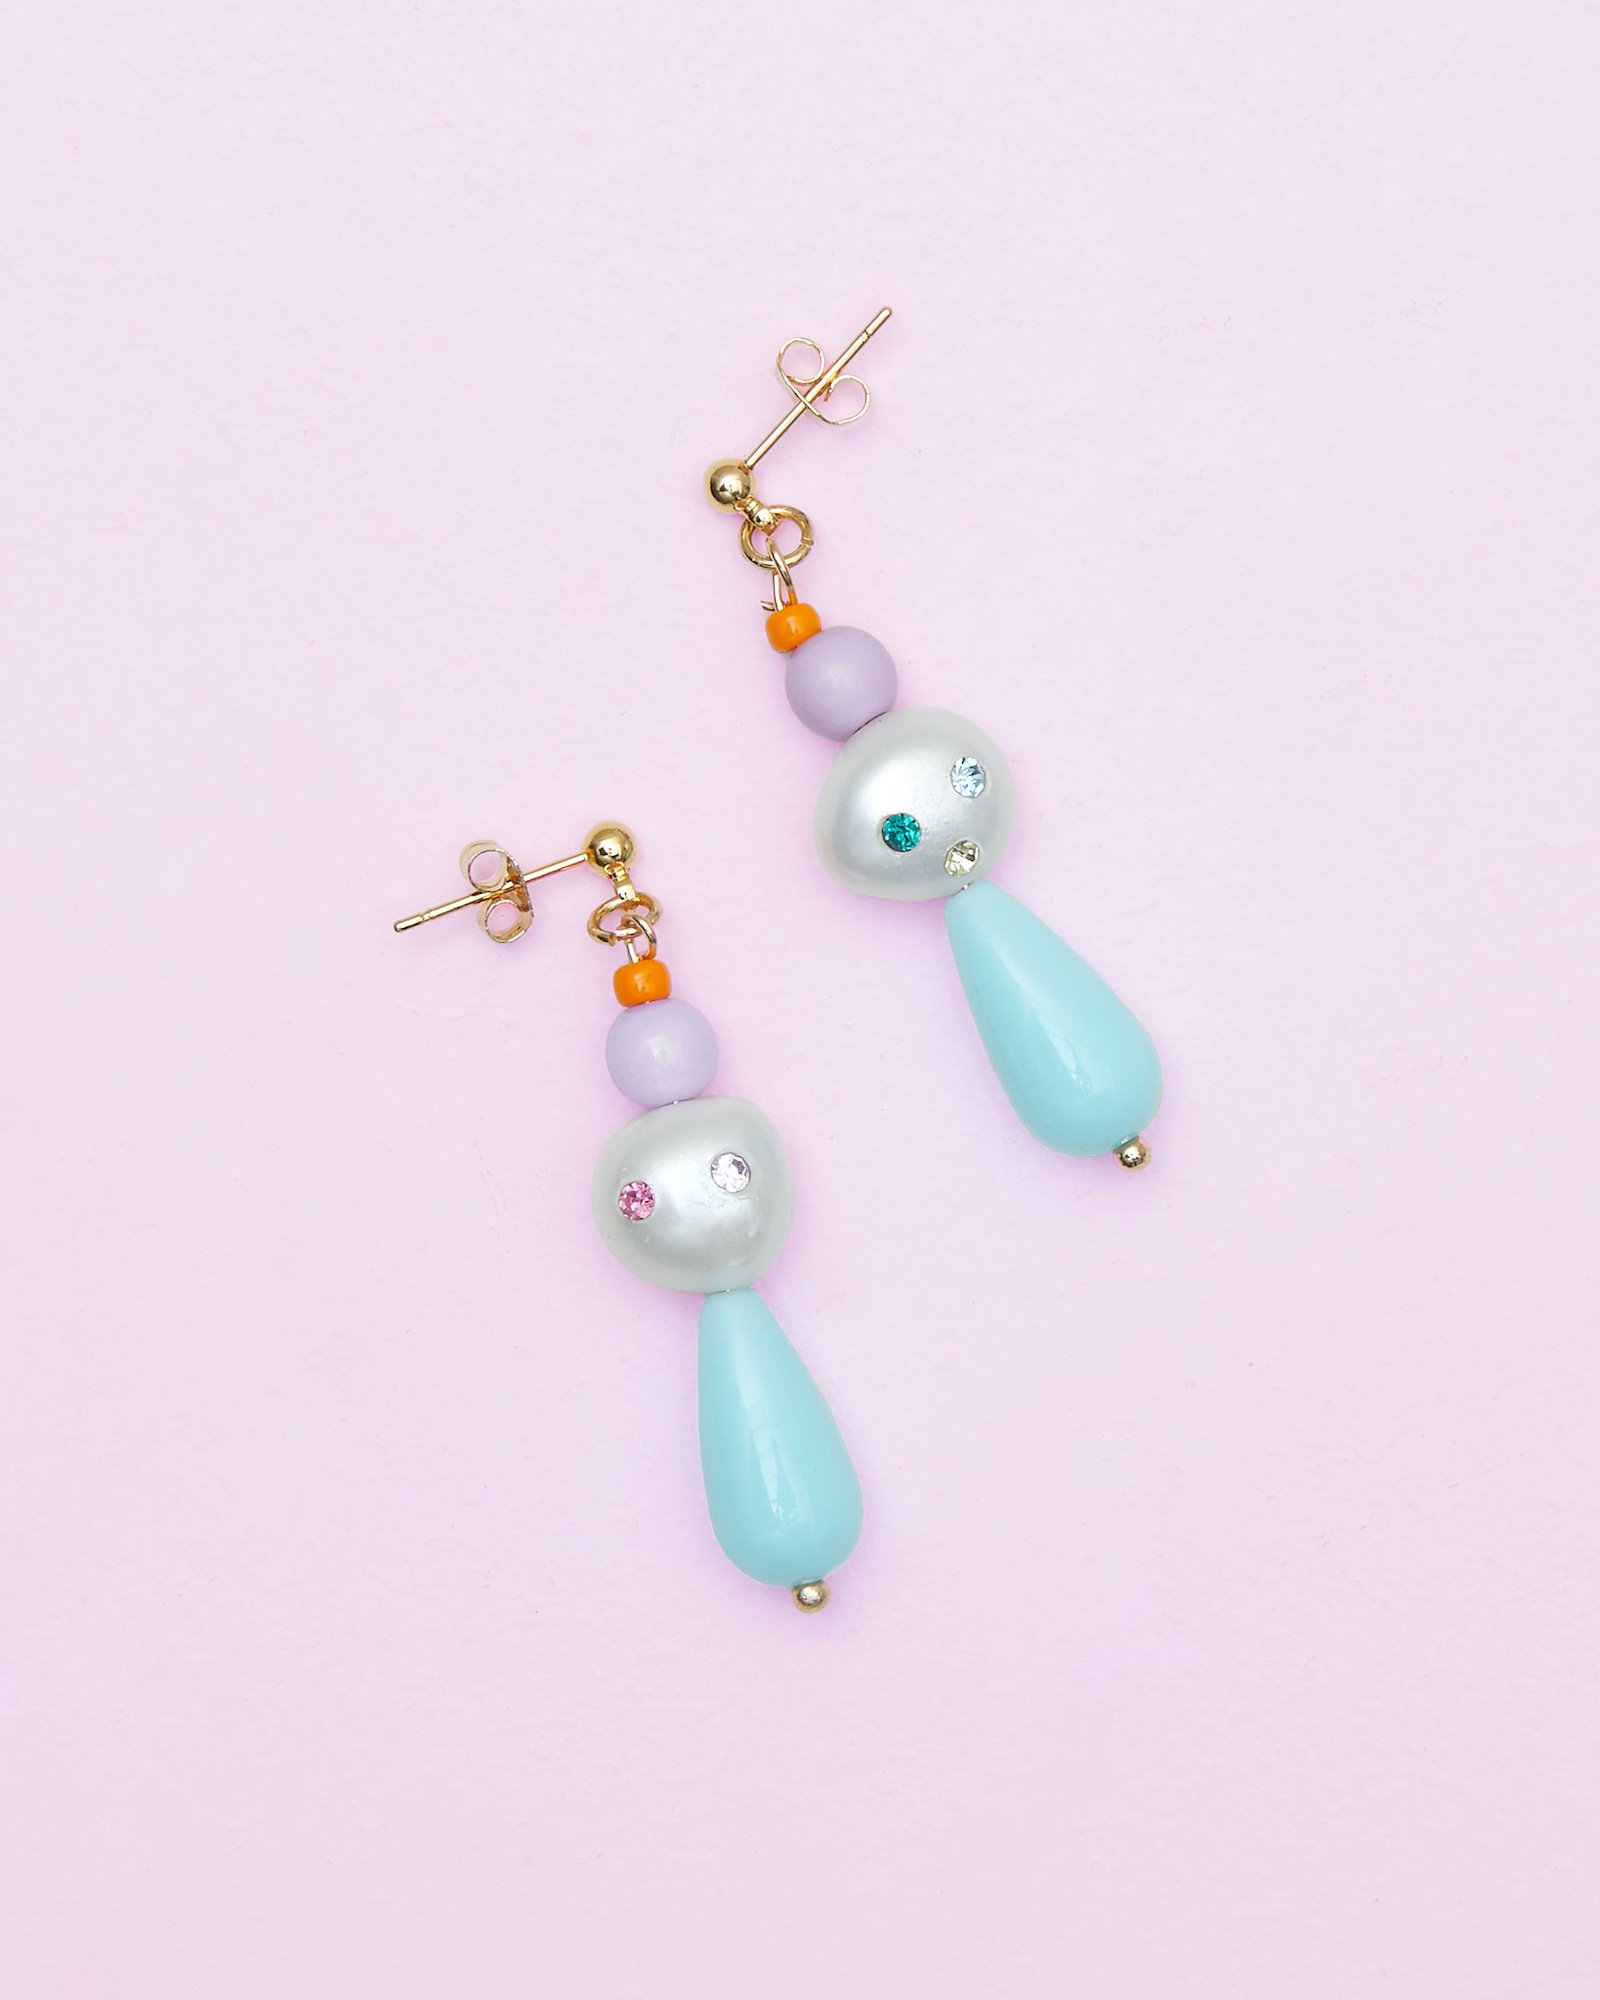 DIY: Stud earrings with beads DIY6035_image.jpg